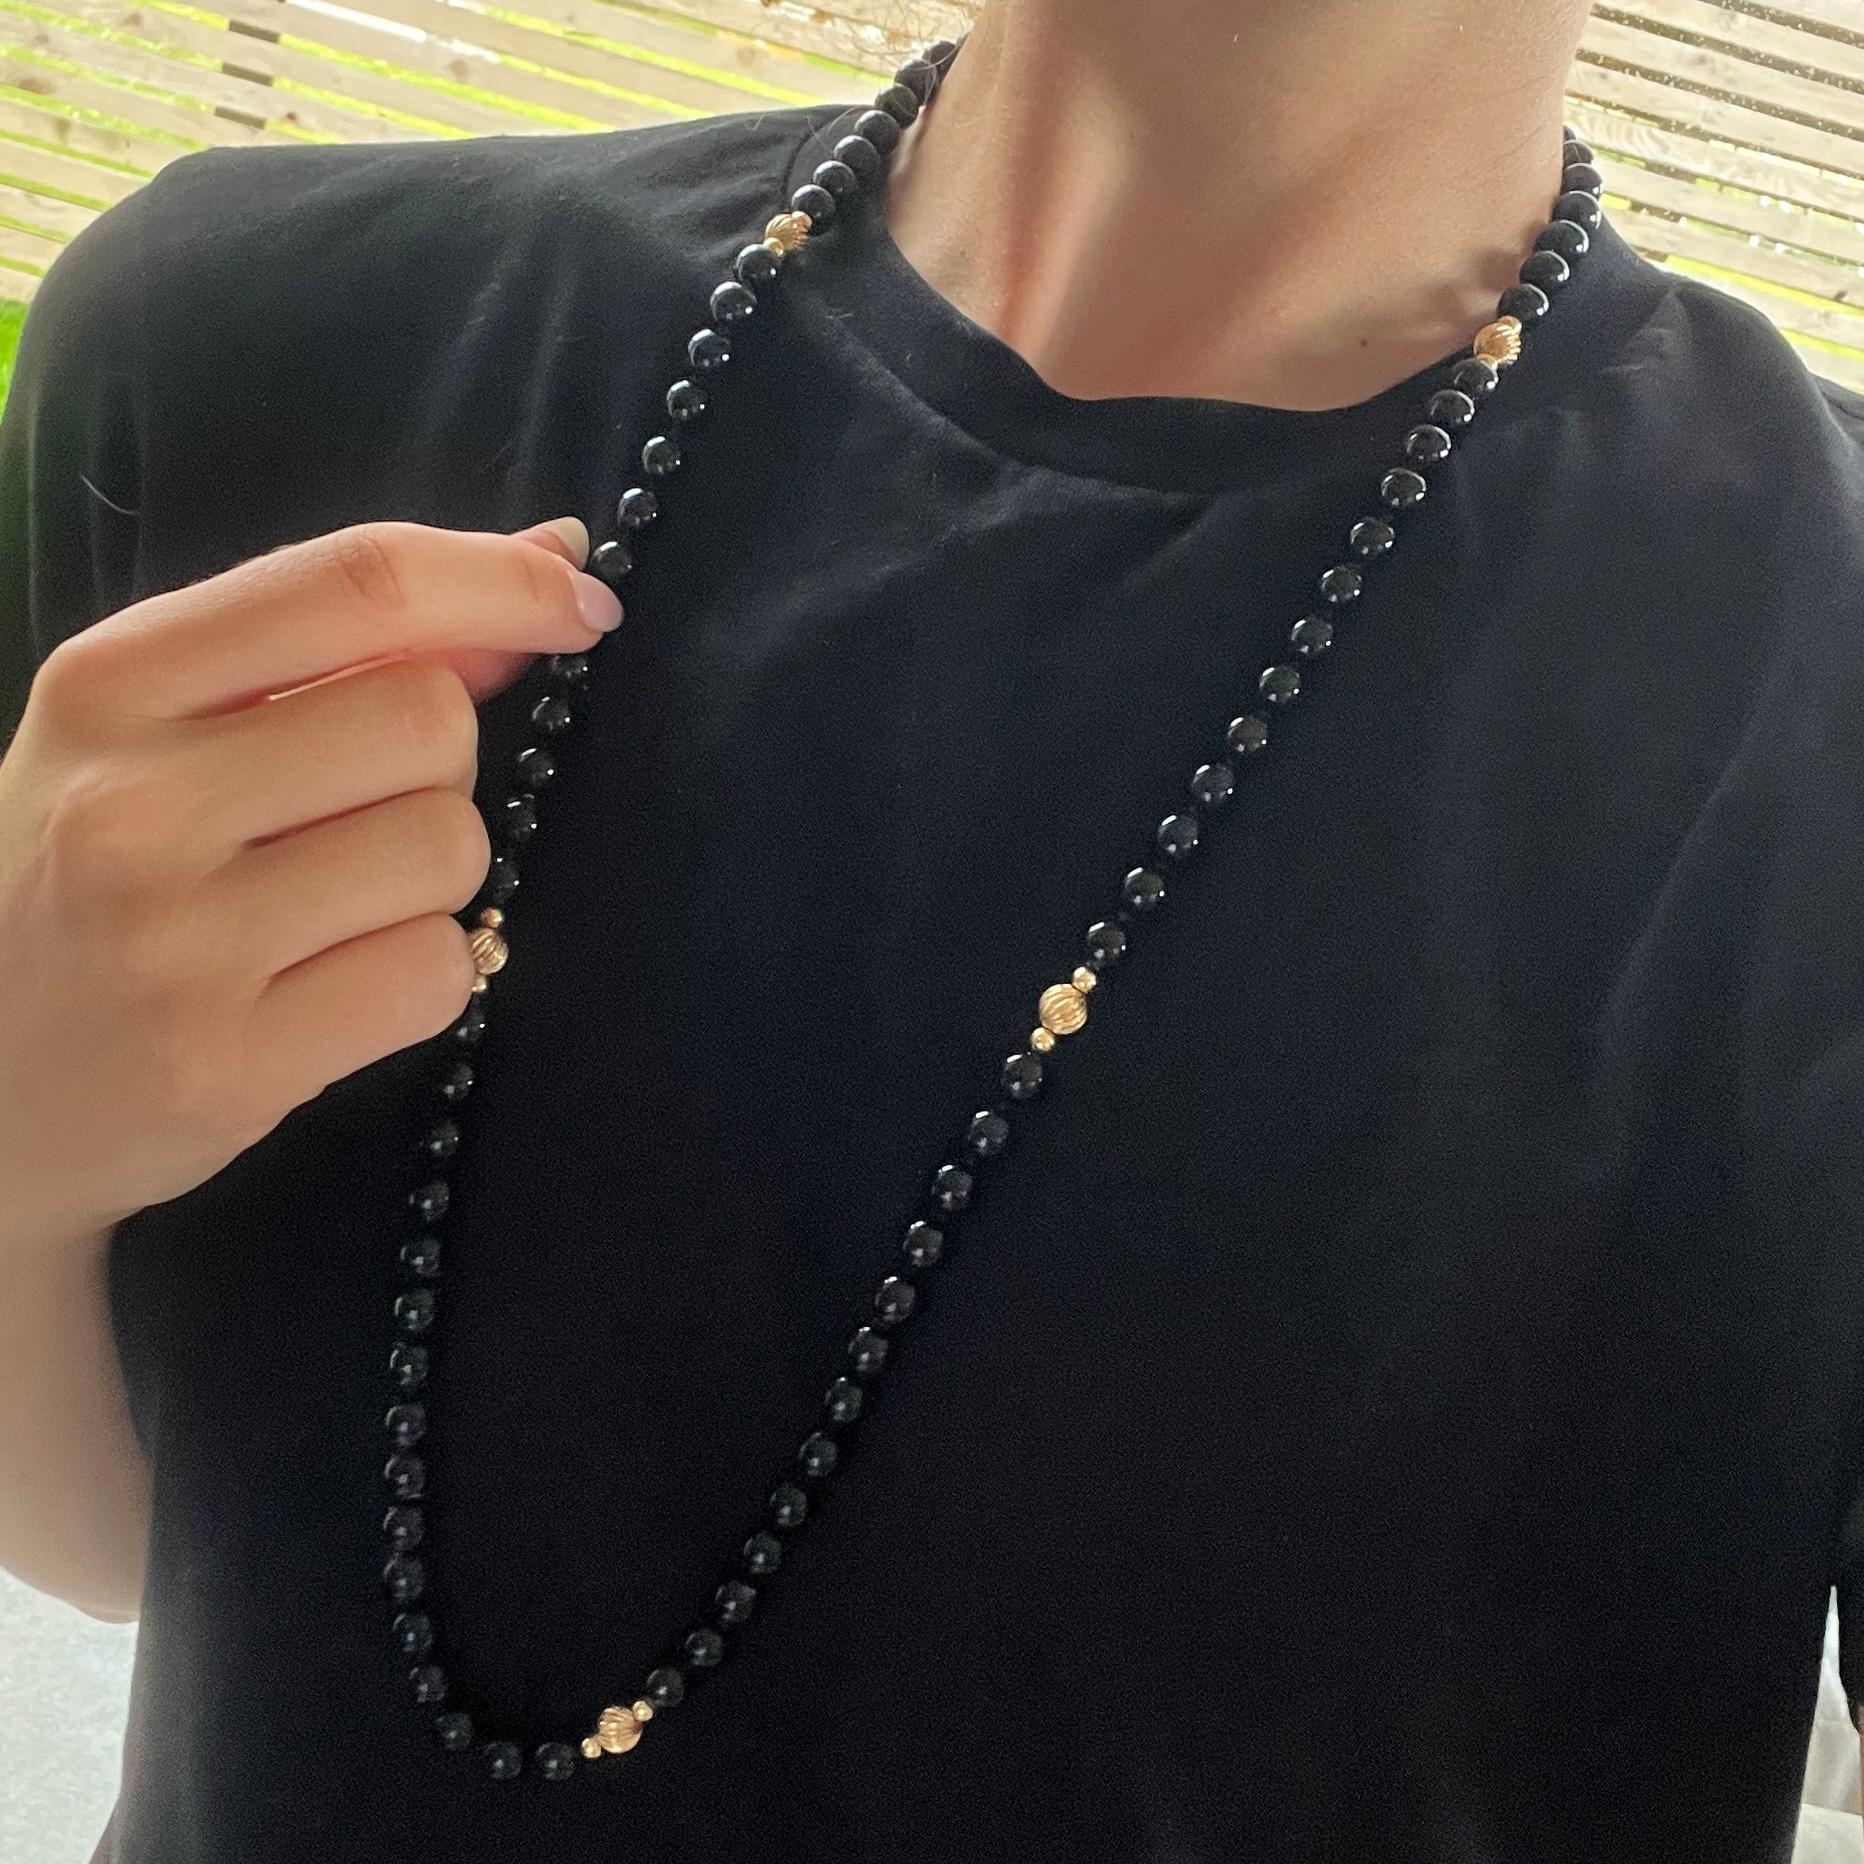 Les perles d'onyx sont magnifiquement brillantes et les six perles en or 9 carats complètent parfaitement les perles. 

Longueur : 80 cm 
Diamètre des perles : 7 mm

Poids : 58,3 g